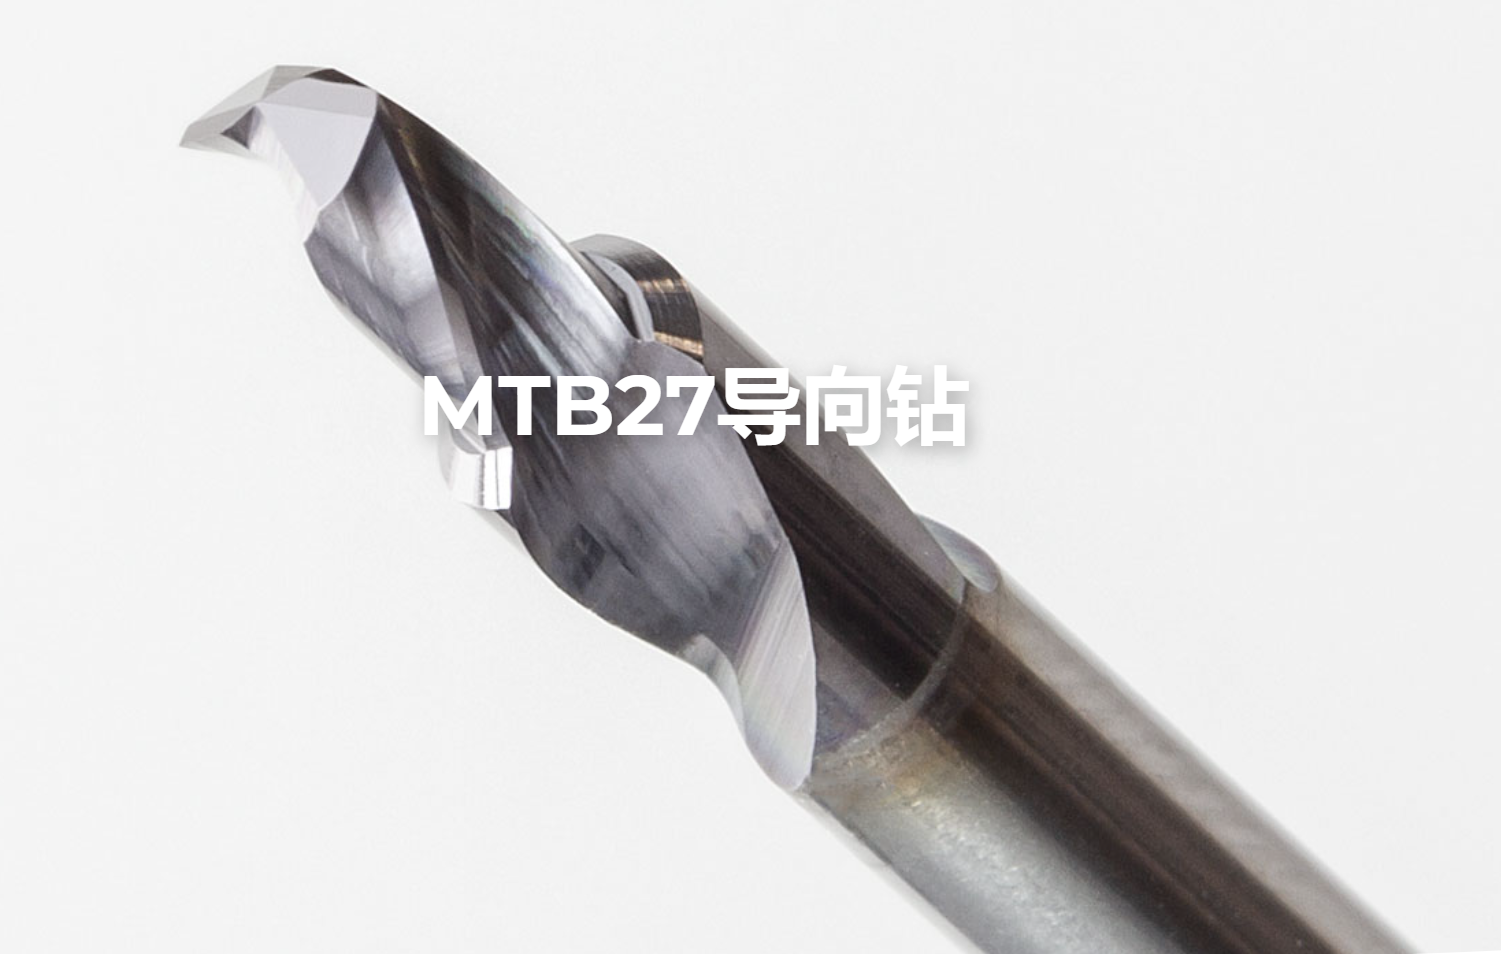 瑞士TUSA高性能钻头-导向钻头MTB27 系列